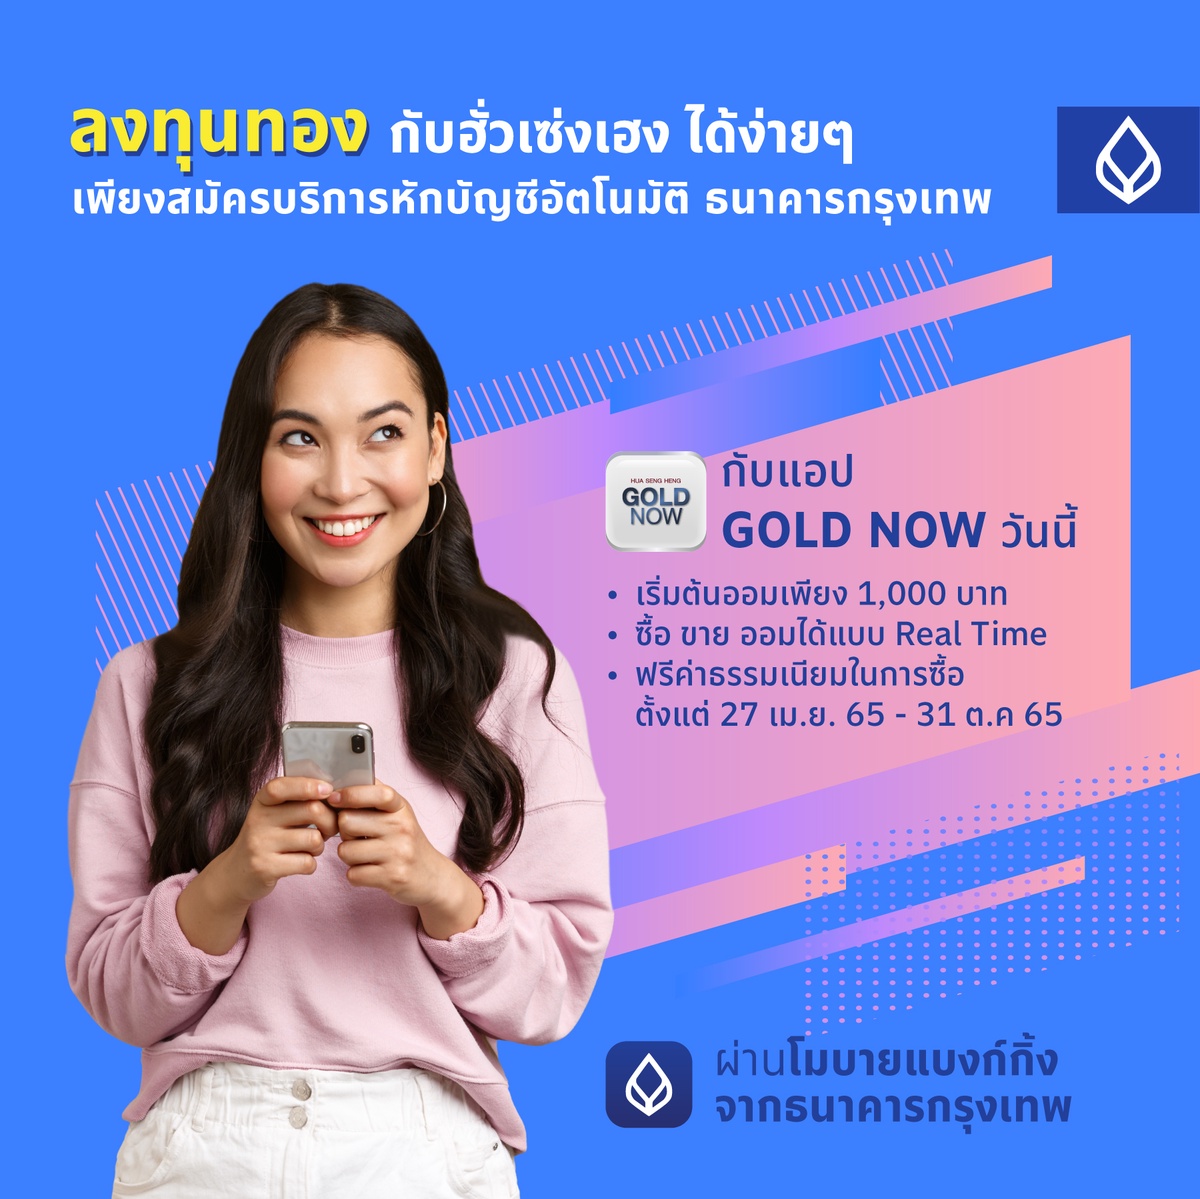 'ธนาคารกรุงเทพ' จับมือ 'ฮั่วเซ่งเฮง' ชวนคนรุ่นใหม่ออมทอง เปิดบัญชีออนไลน์ผ่านแอป GOLD NOW เริ่มต้นแค่พันบาท